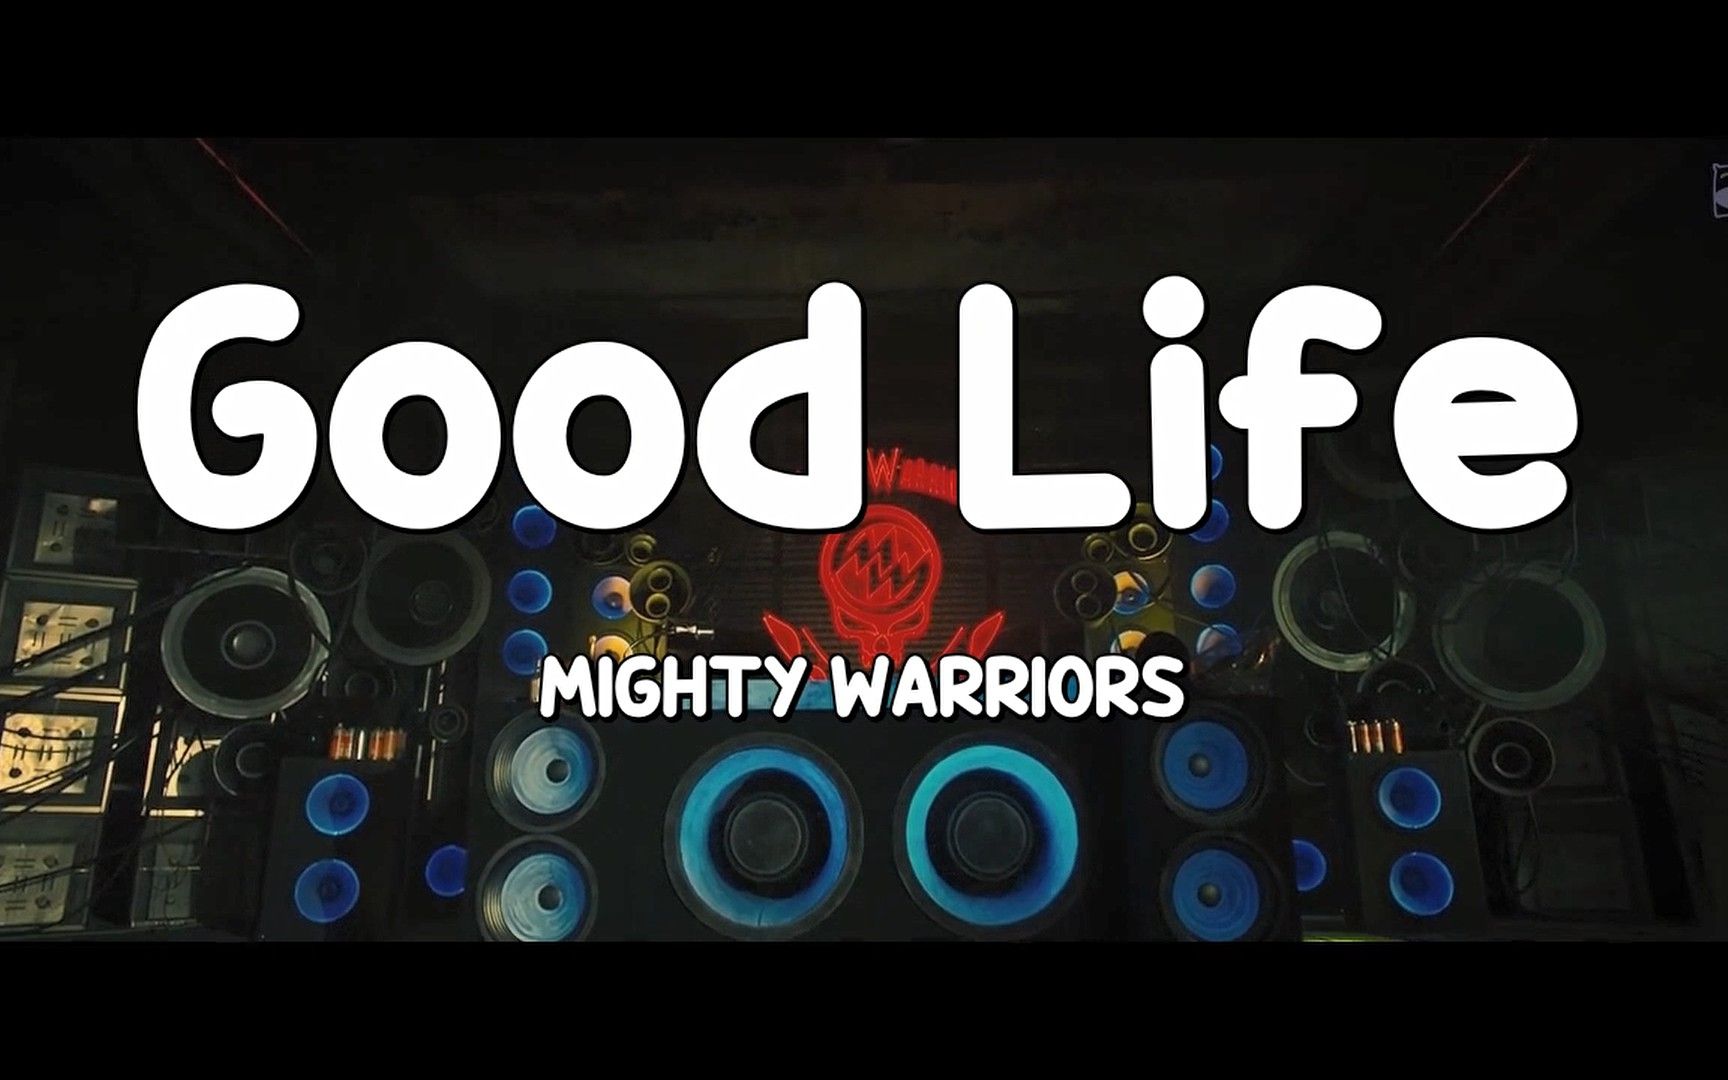 热血街区 の mighty warriors 插曲《good life》